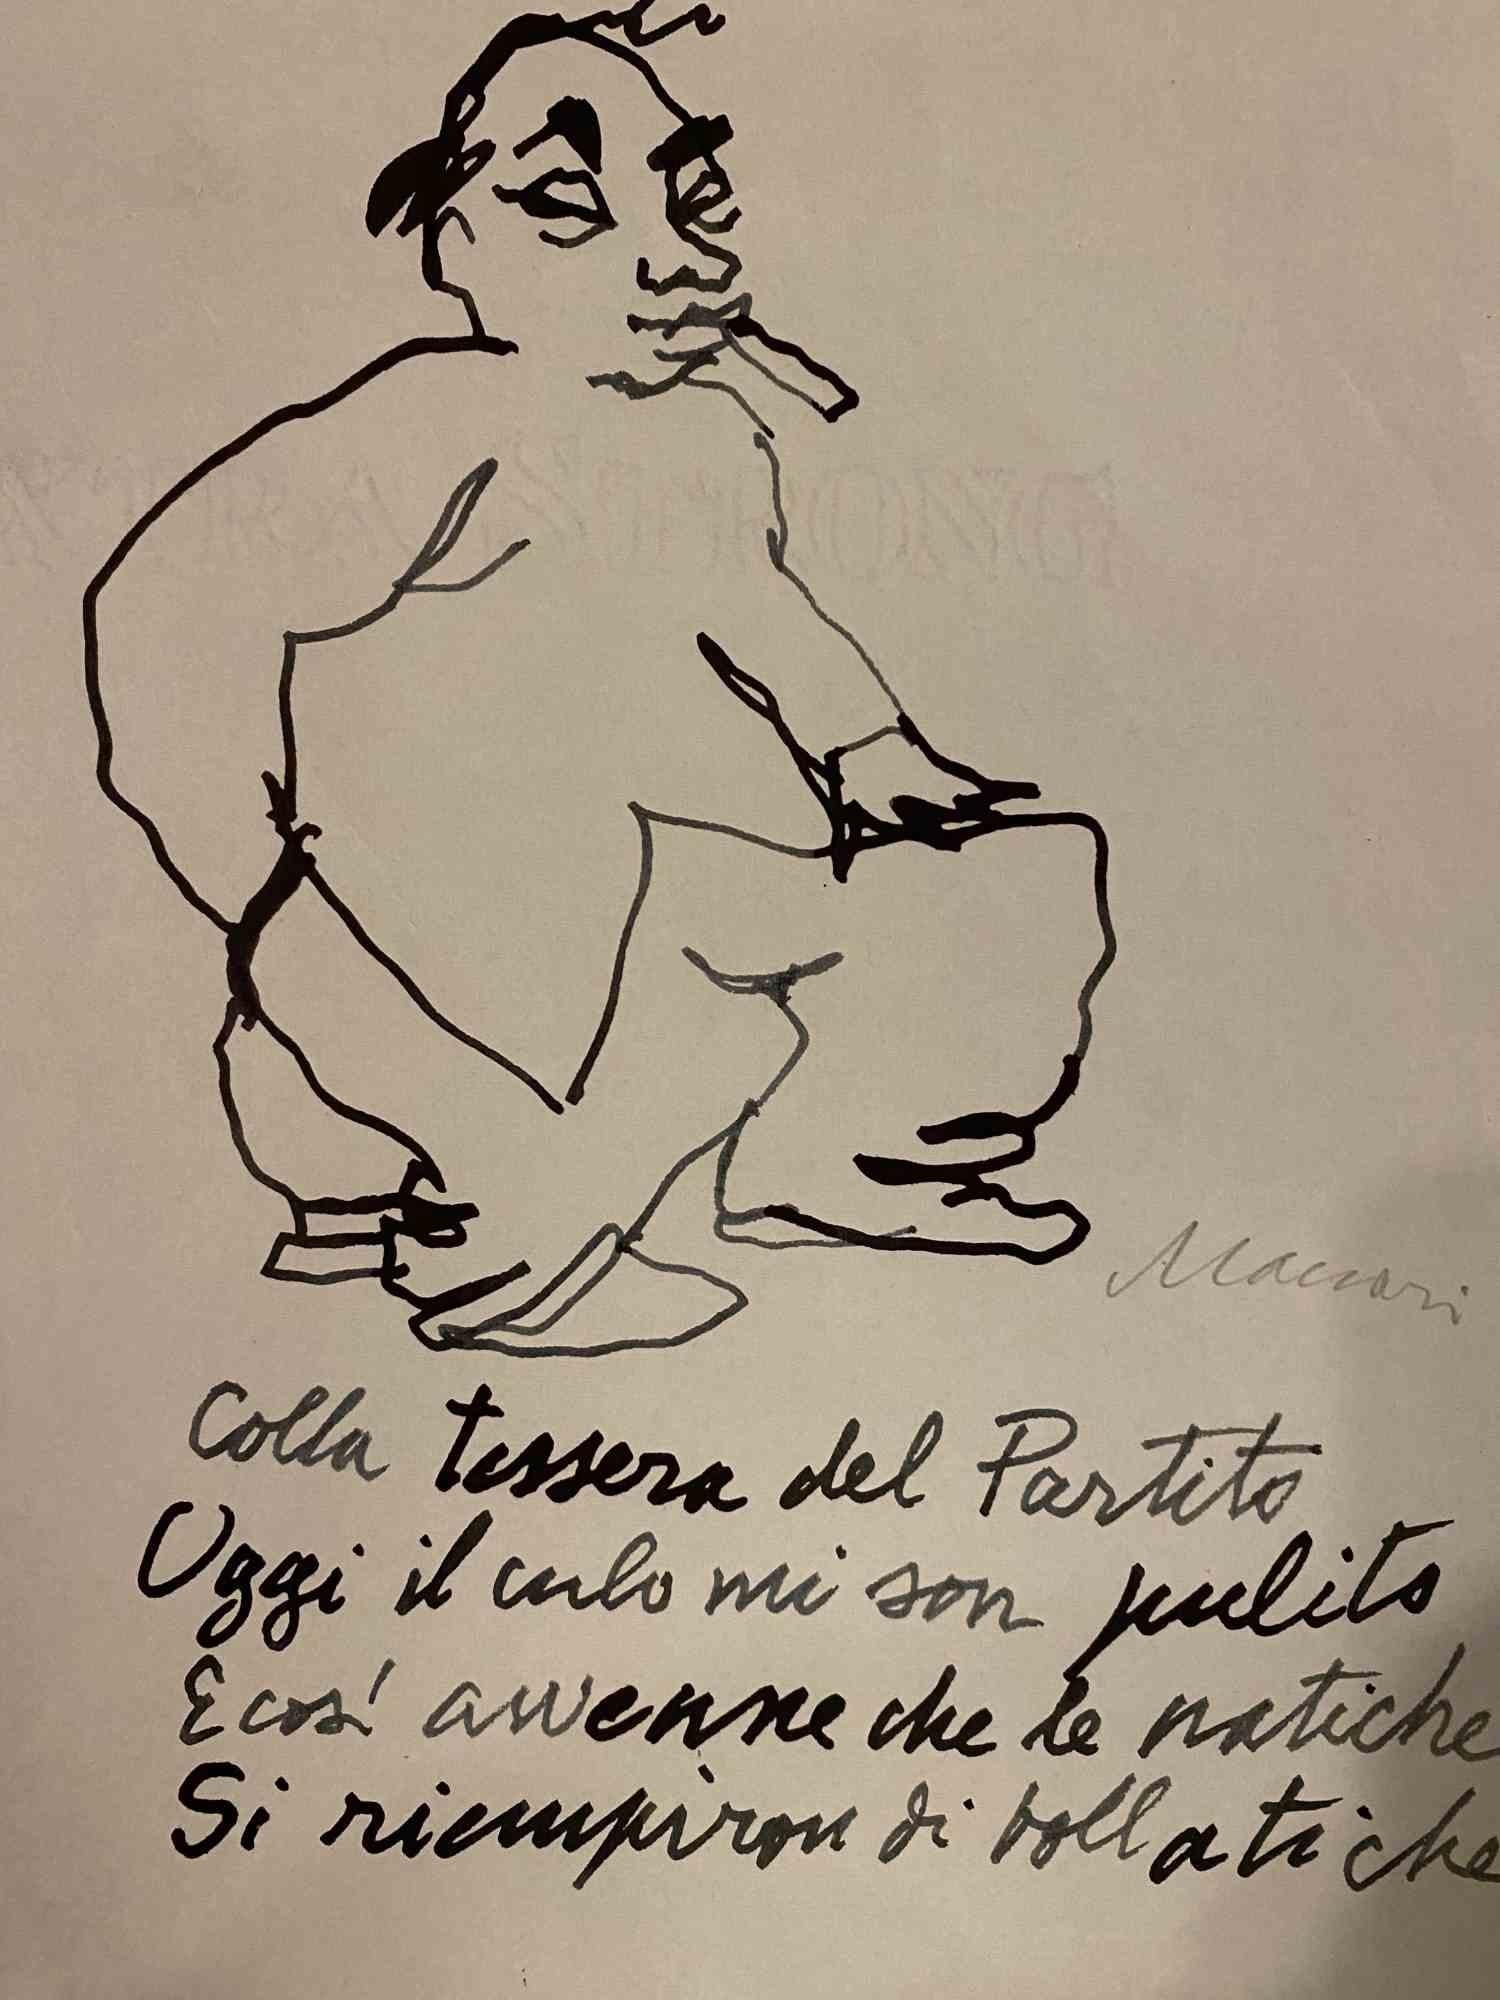 Der Dichter mit  Poem ist eine Federzeichnung von Mino Maccari aus den 1975er Jahren.

Am unteren Rand mit Bleistift handsigniert.

Guter Zustand mit leichten Faltungen.

Das Kunstwerk wird mit sicheren, geschickten und ausdrucksstarken Strichen